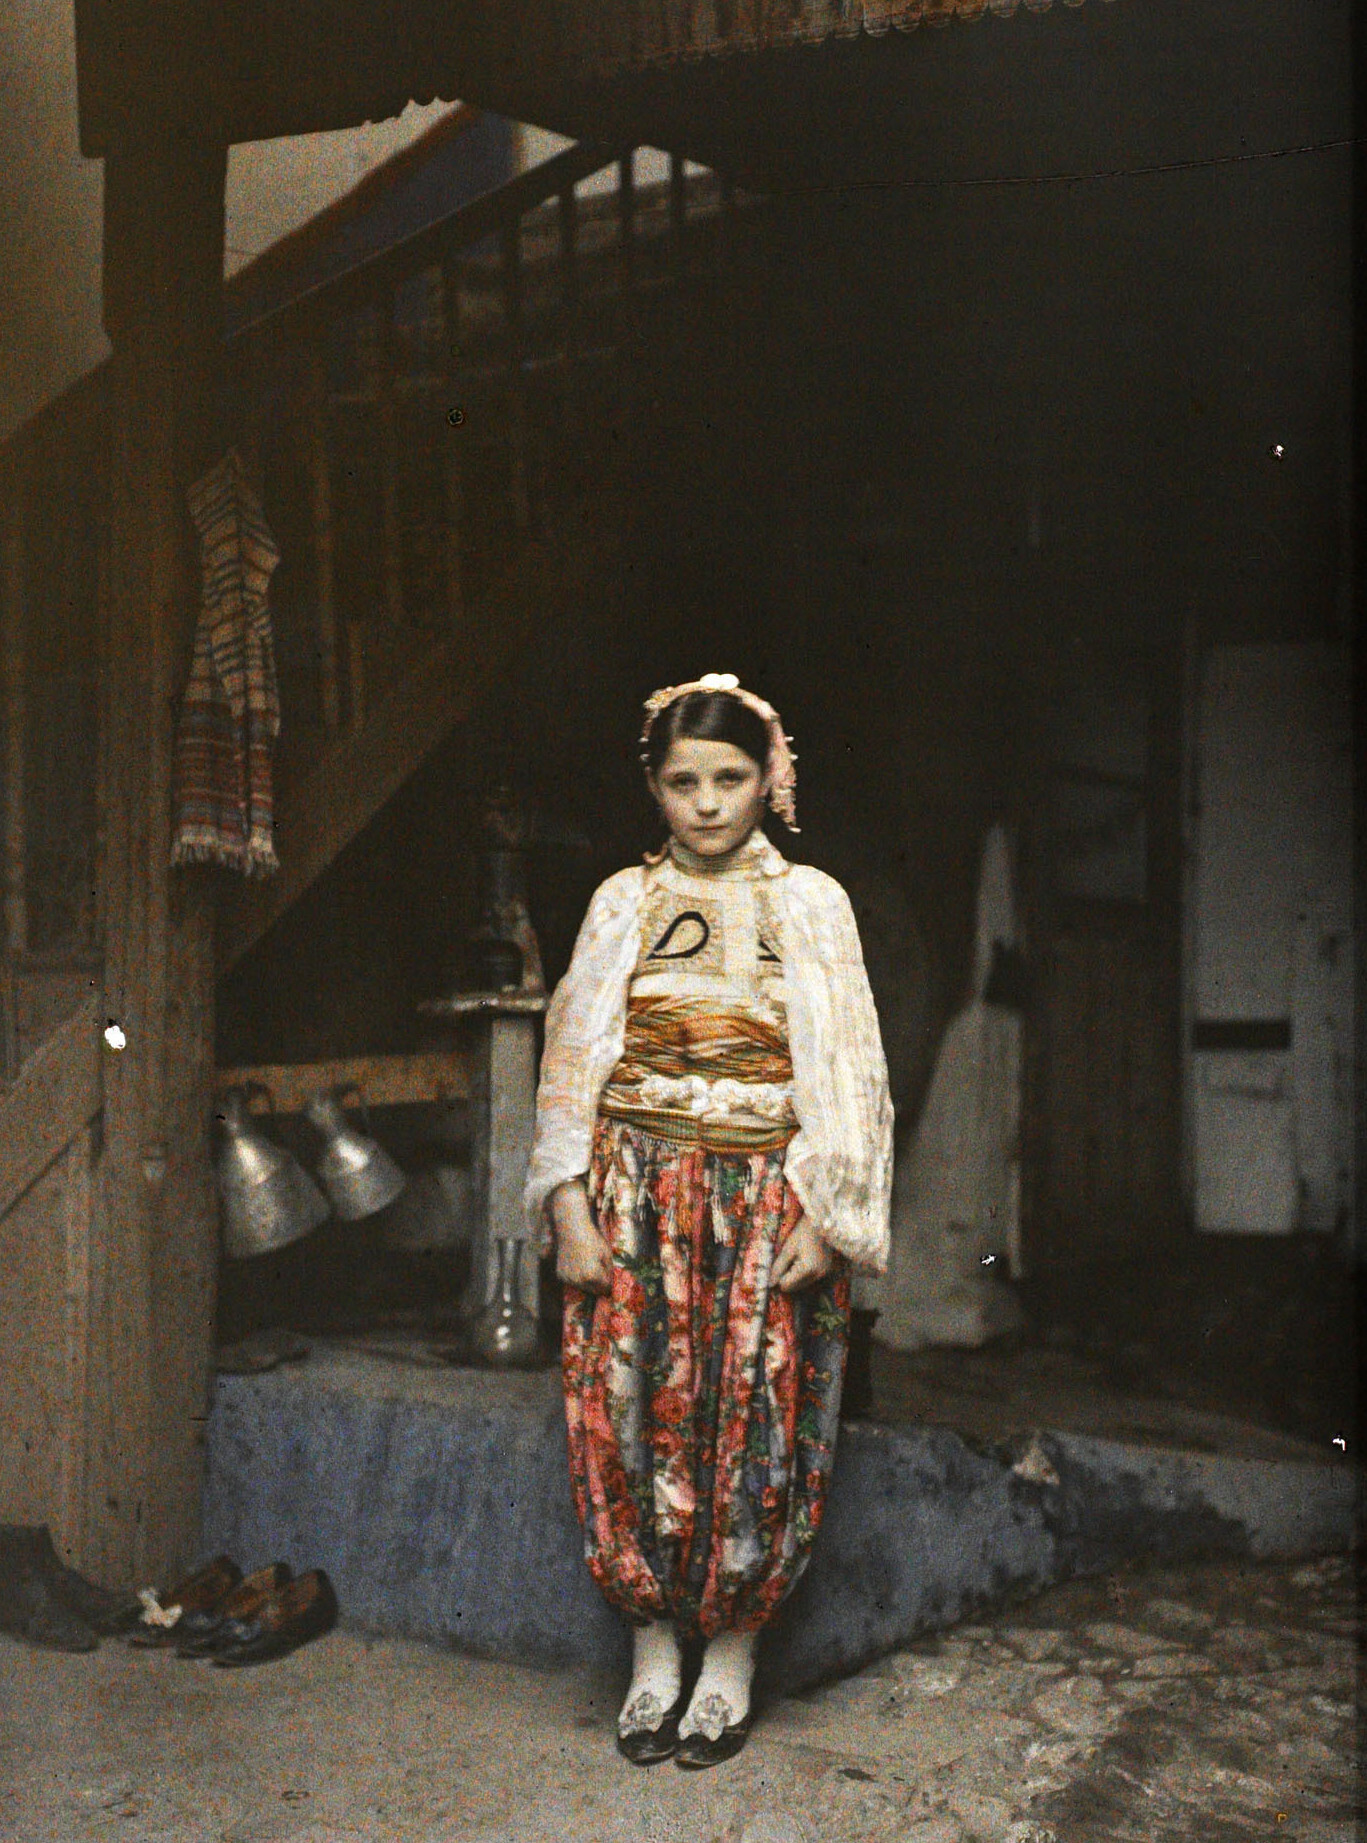 Призрен, Косово, Сербия. Cербская девочка в традиционном костюме во дворе дома, 1913 год, автор Огюст Леон (автохром)